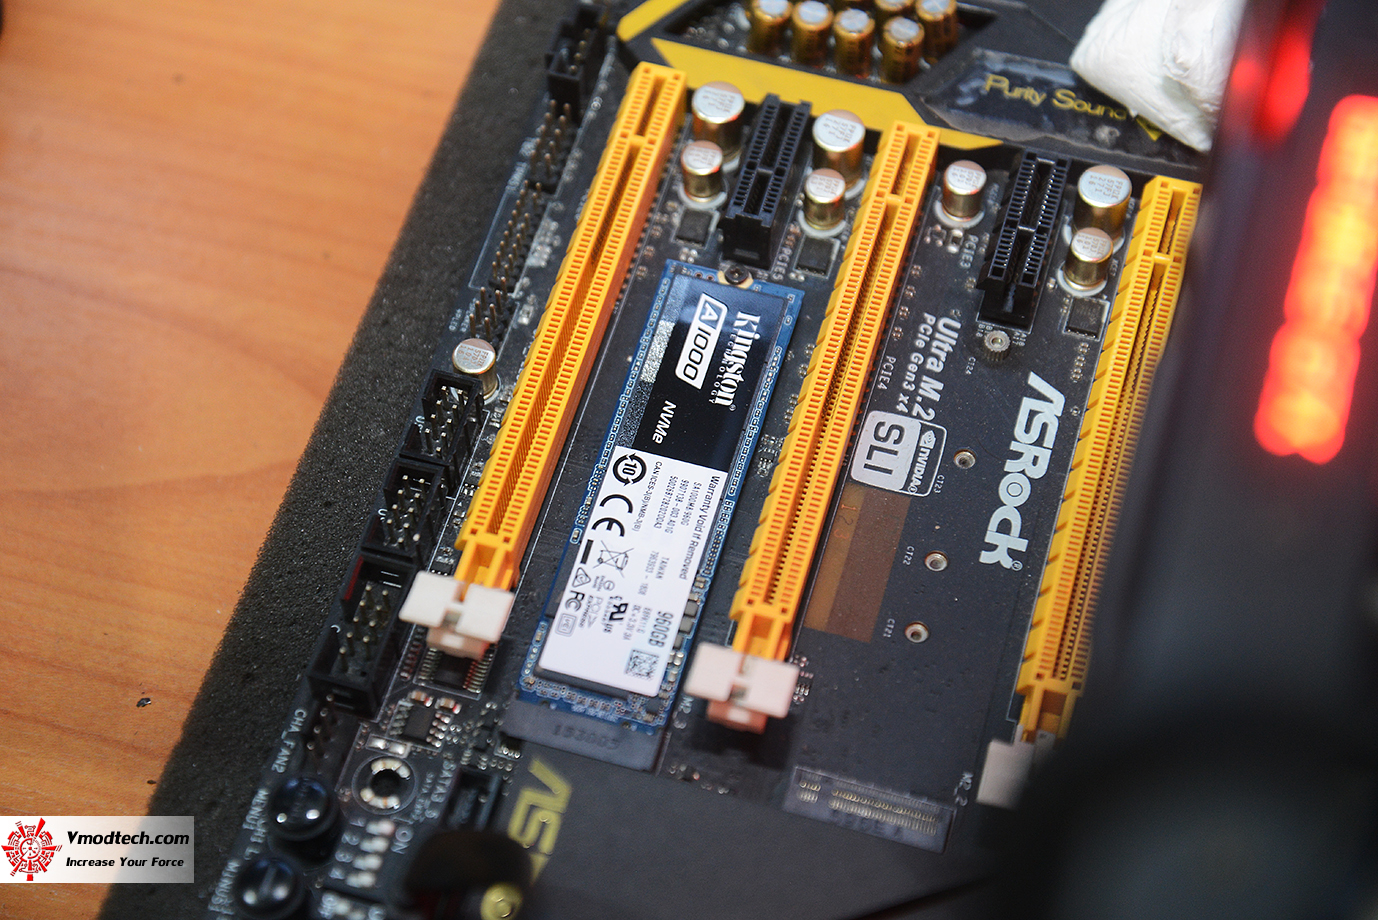 dsc 3267 KINGSTON A1000 NVMe PCIe SSD 960GB Review